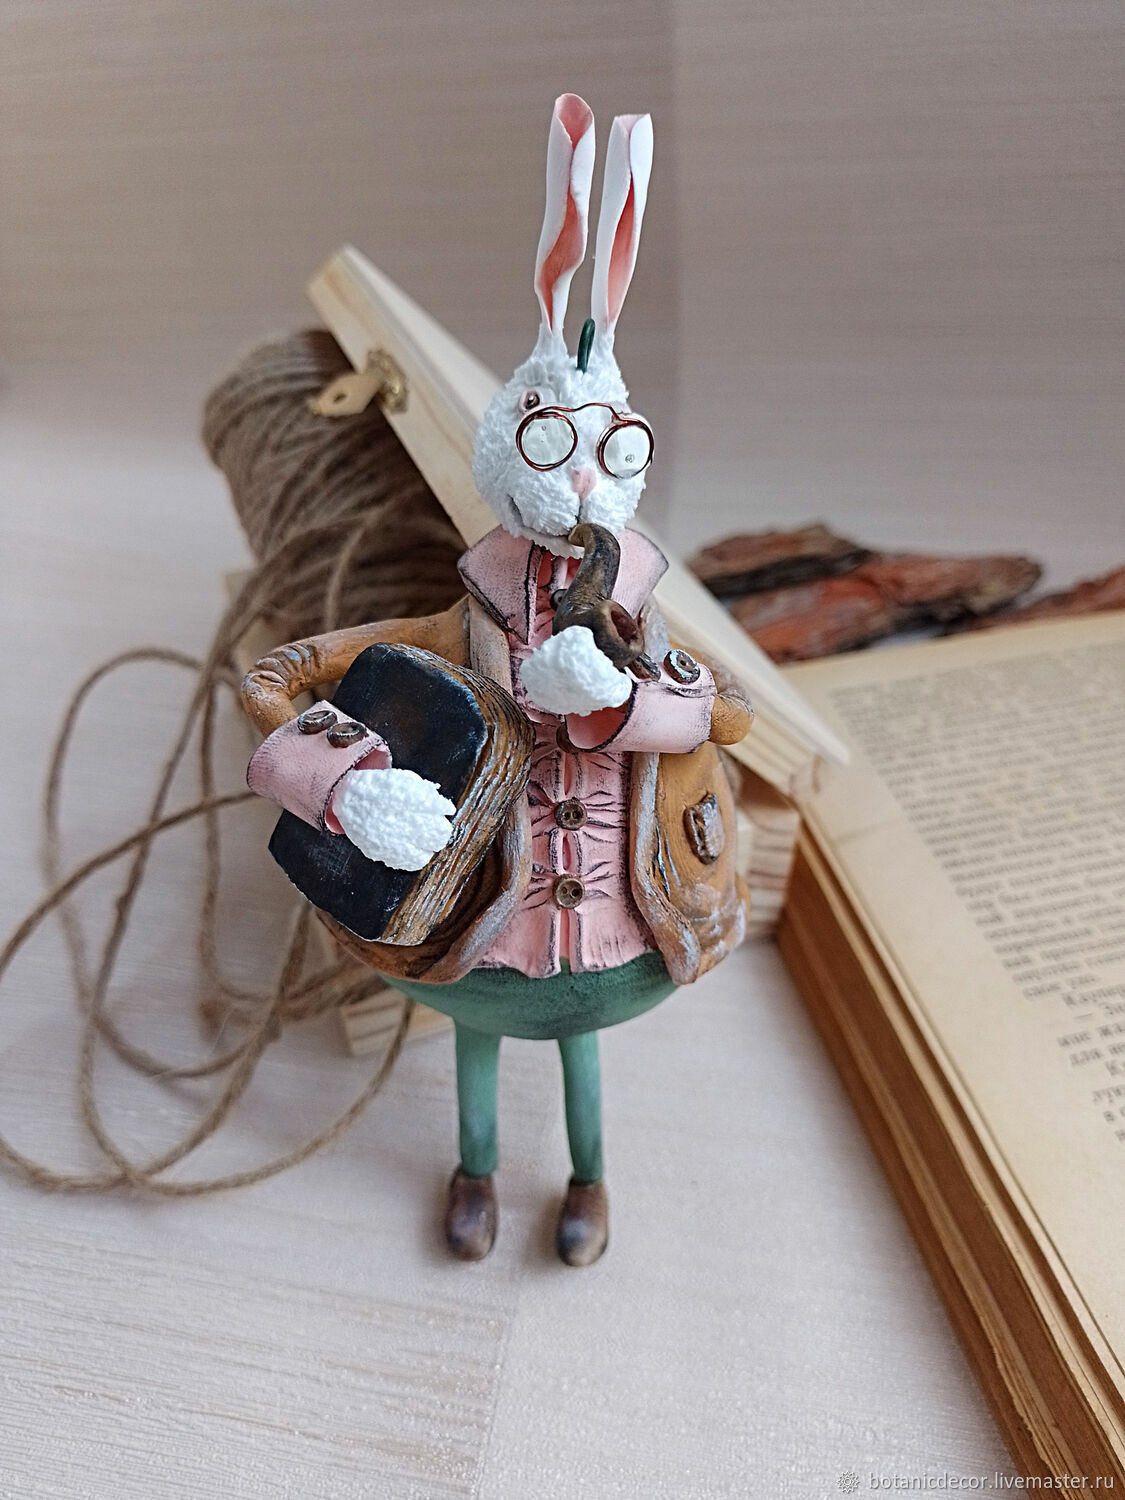 Елочная игрушка заяц кролик с книгой и трубкой, Елочные игрушки, Воронеж,  Фото №1